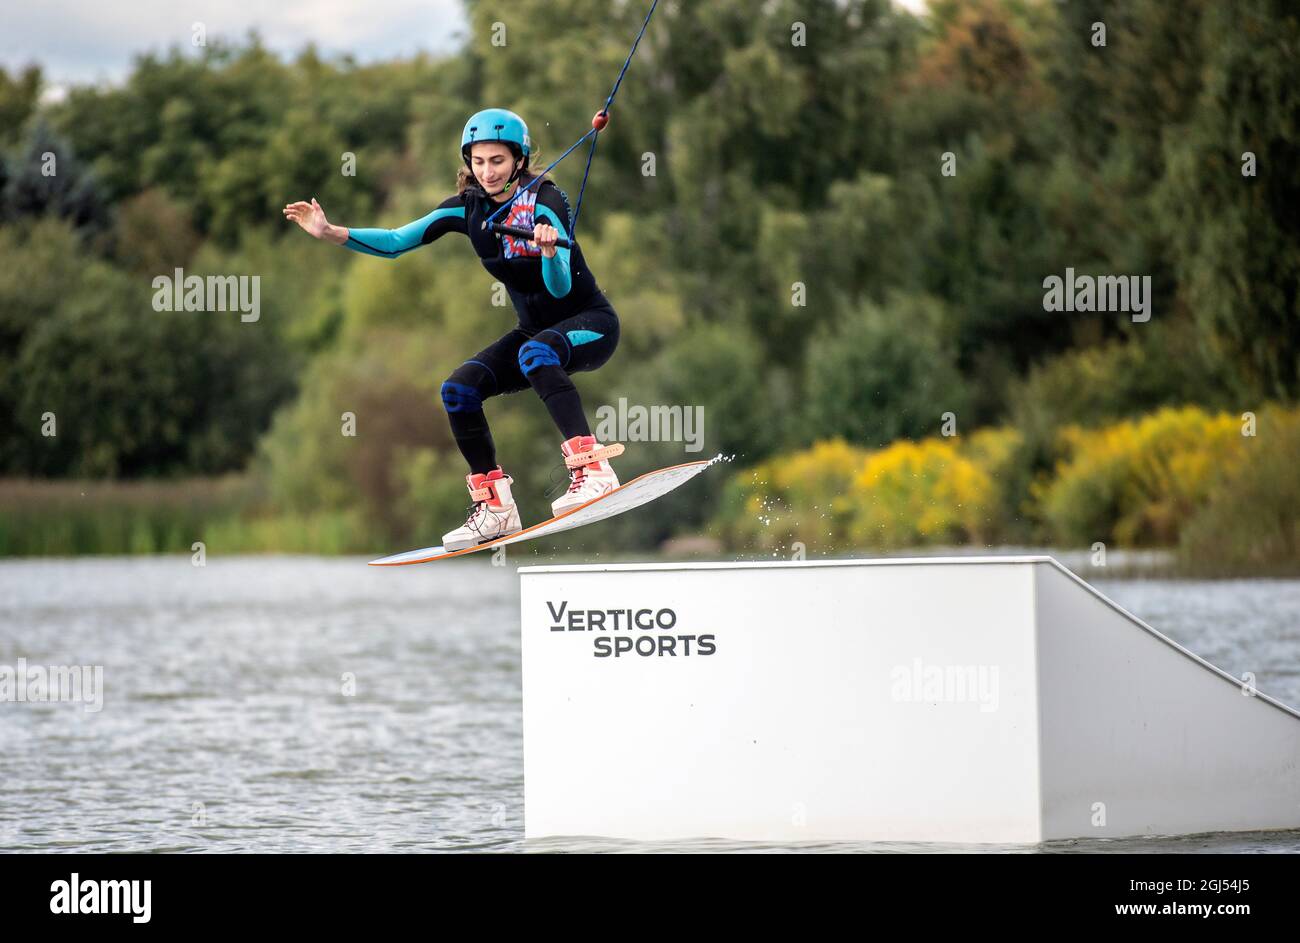 Le wakeboarder fait des trucs. Photo à angle bas d'un homme qui fait du wakeboard sur un lac. Banque D'Images